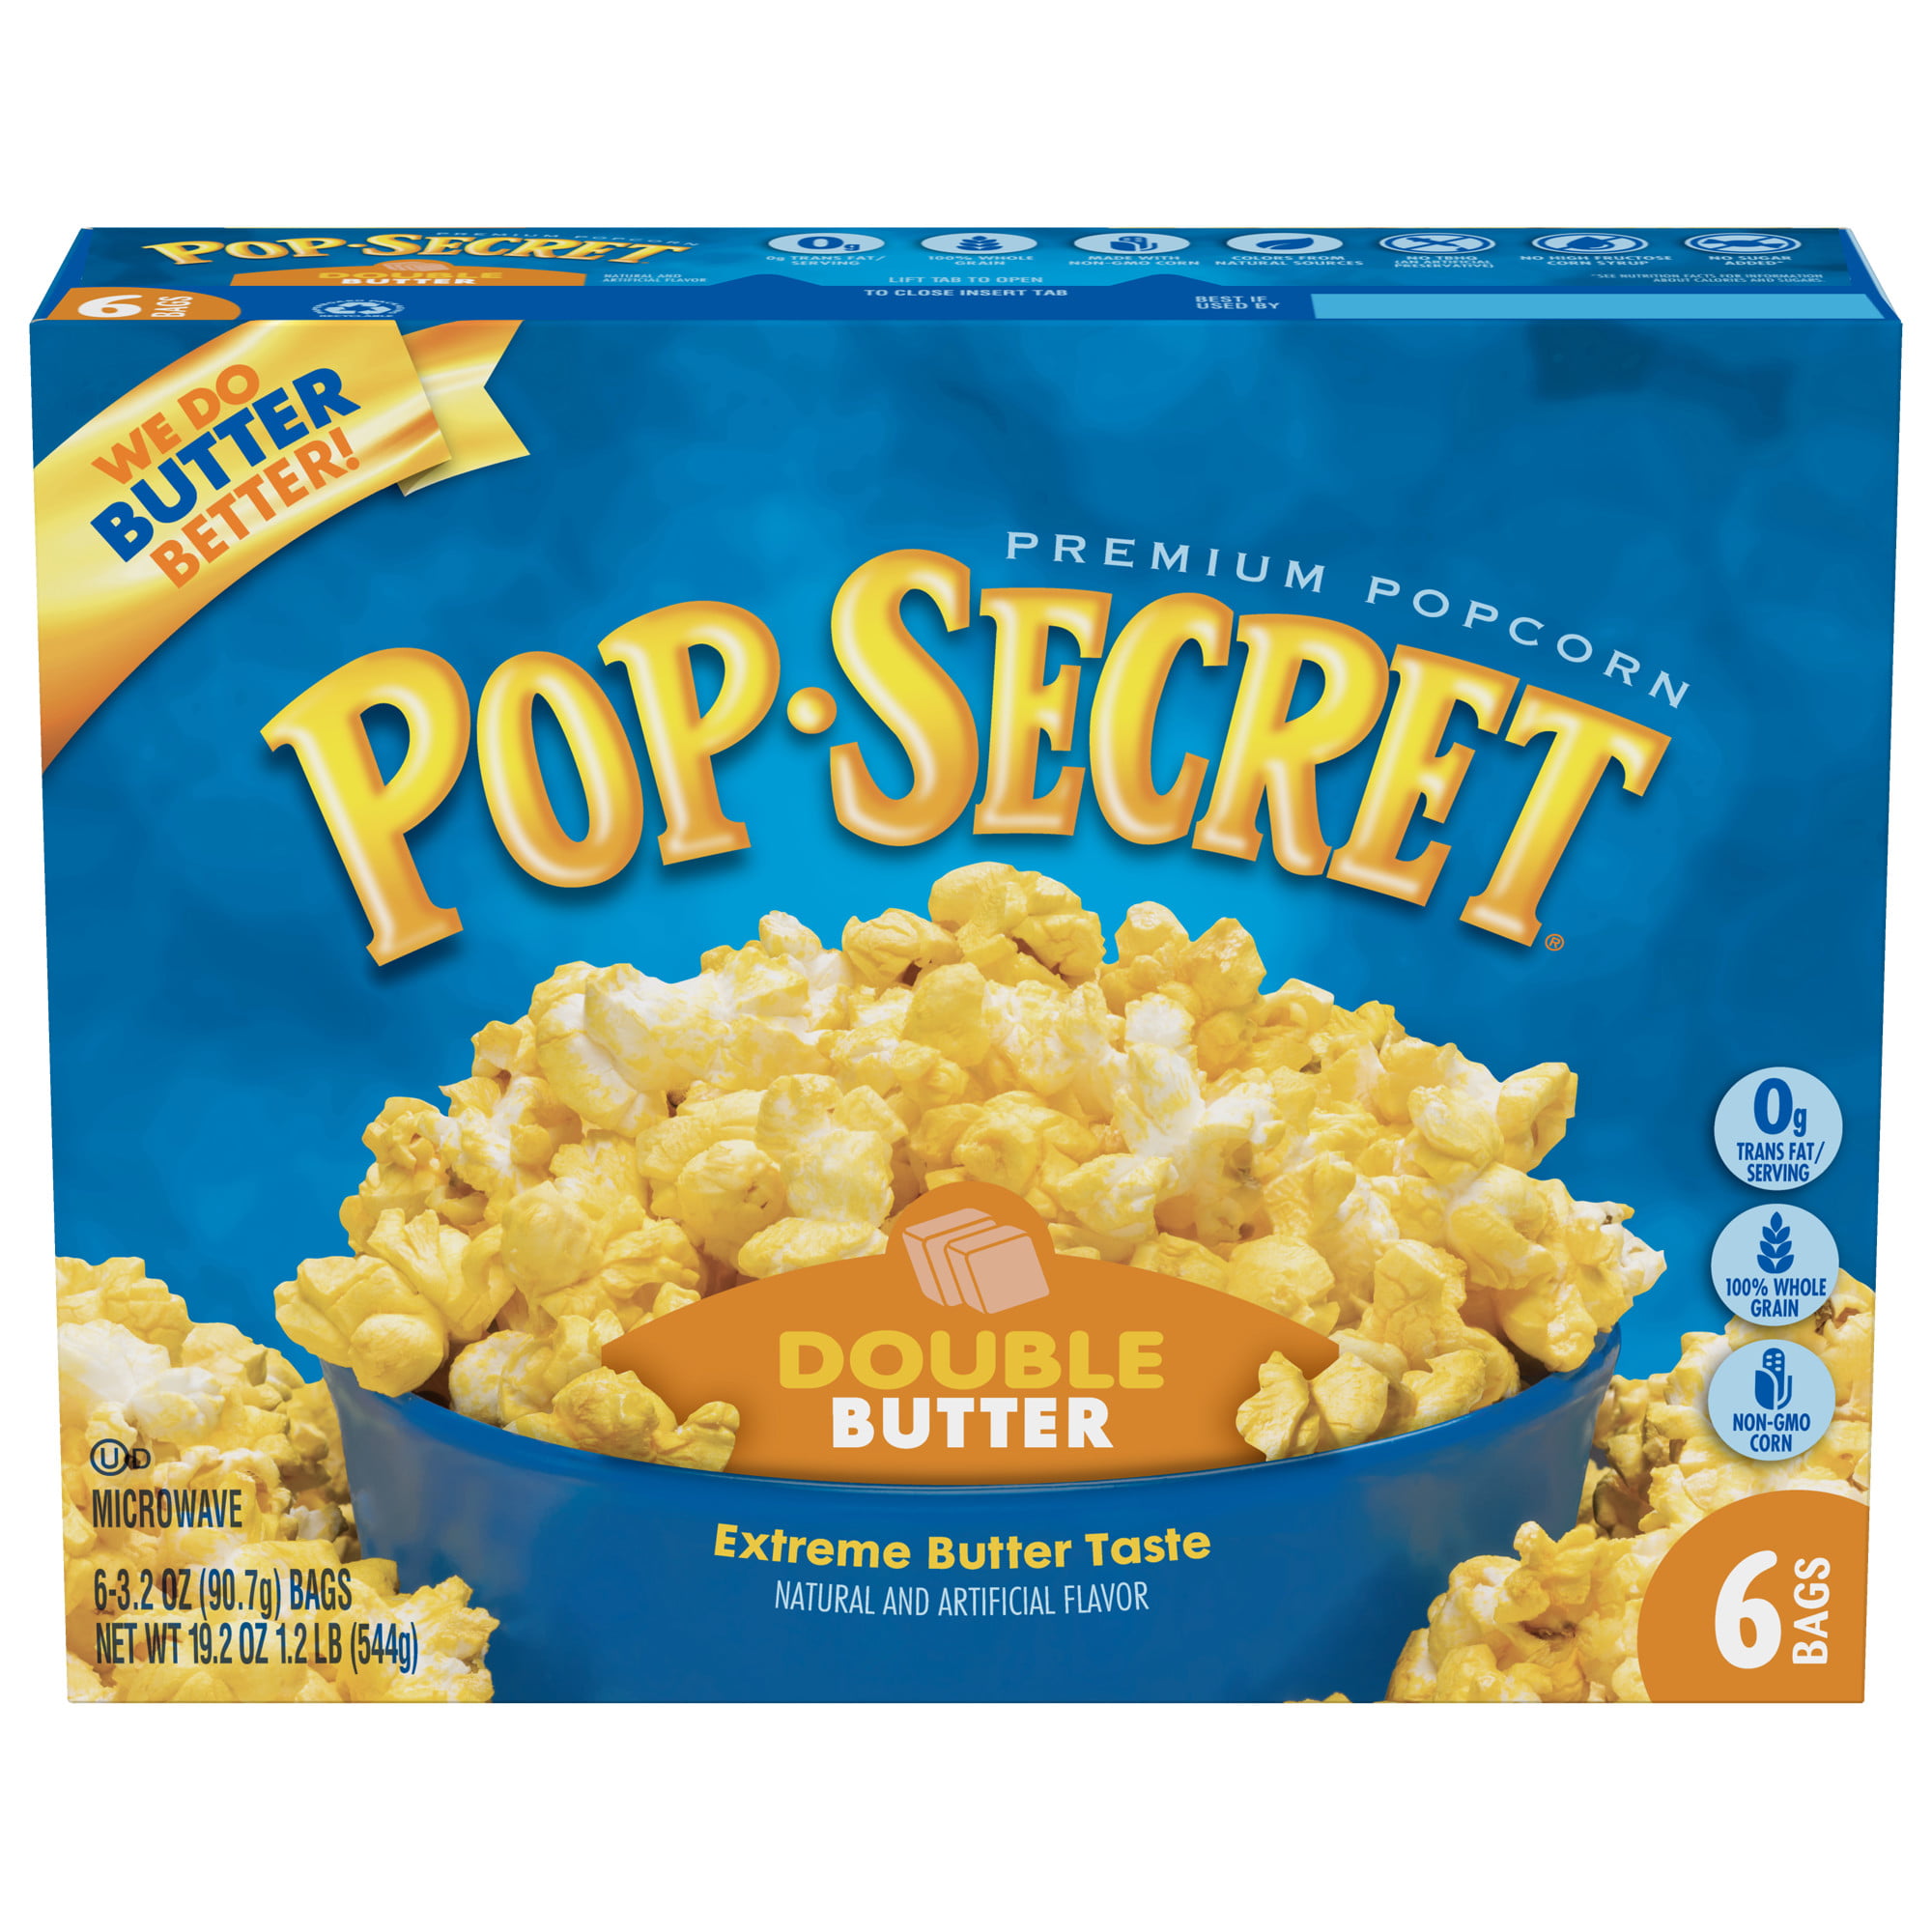 Pop Secret Double Butter Microwave Popcorn, 3.2 Oz, 6 Ct - Walmart.com